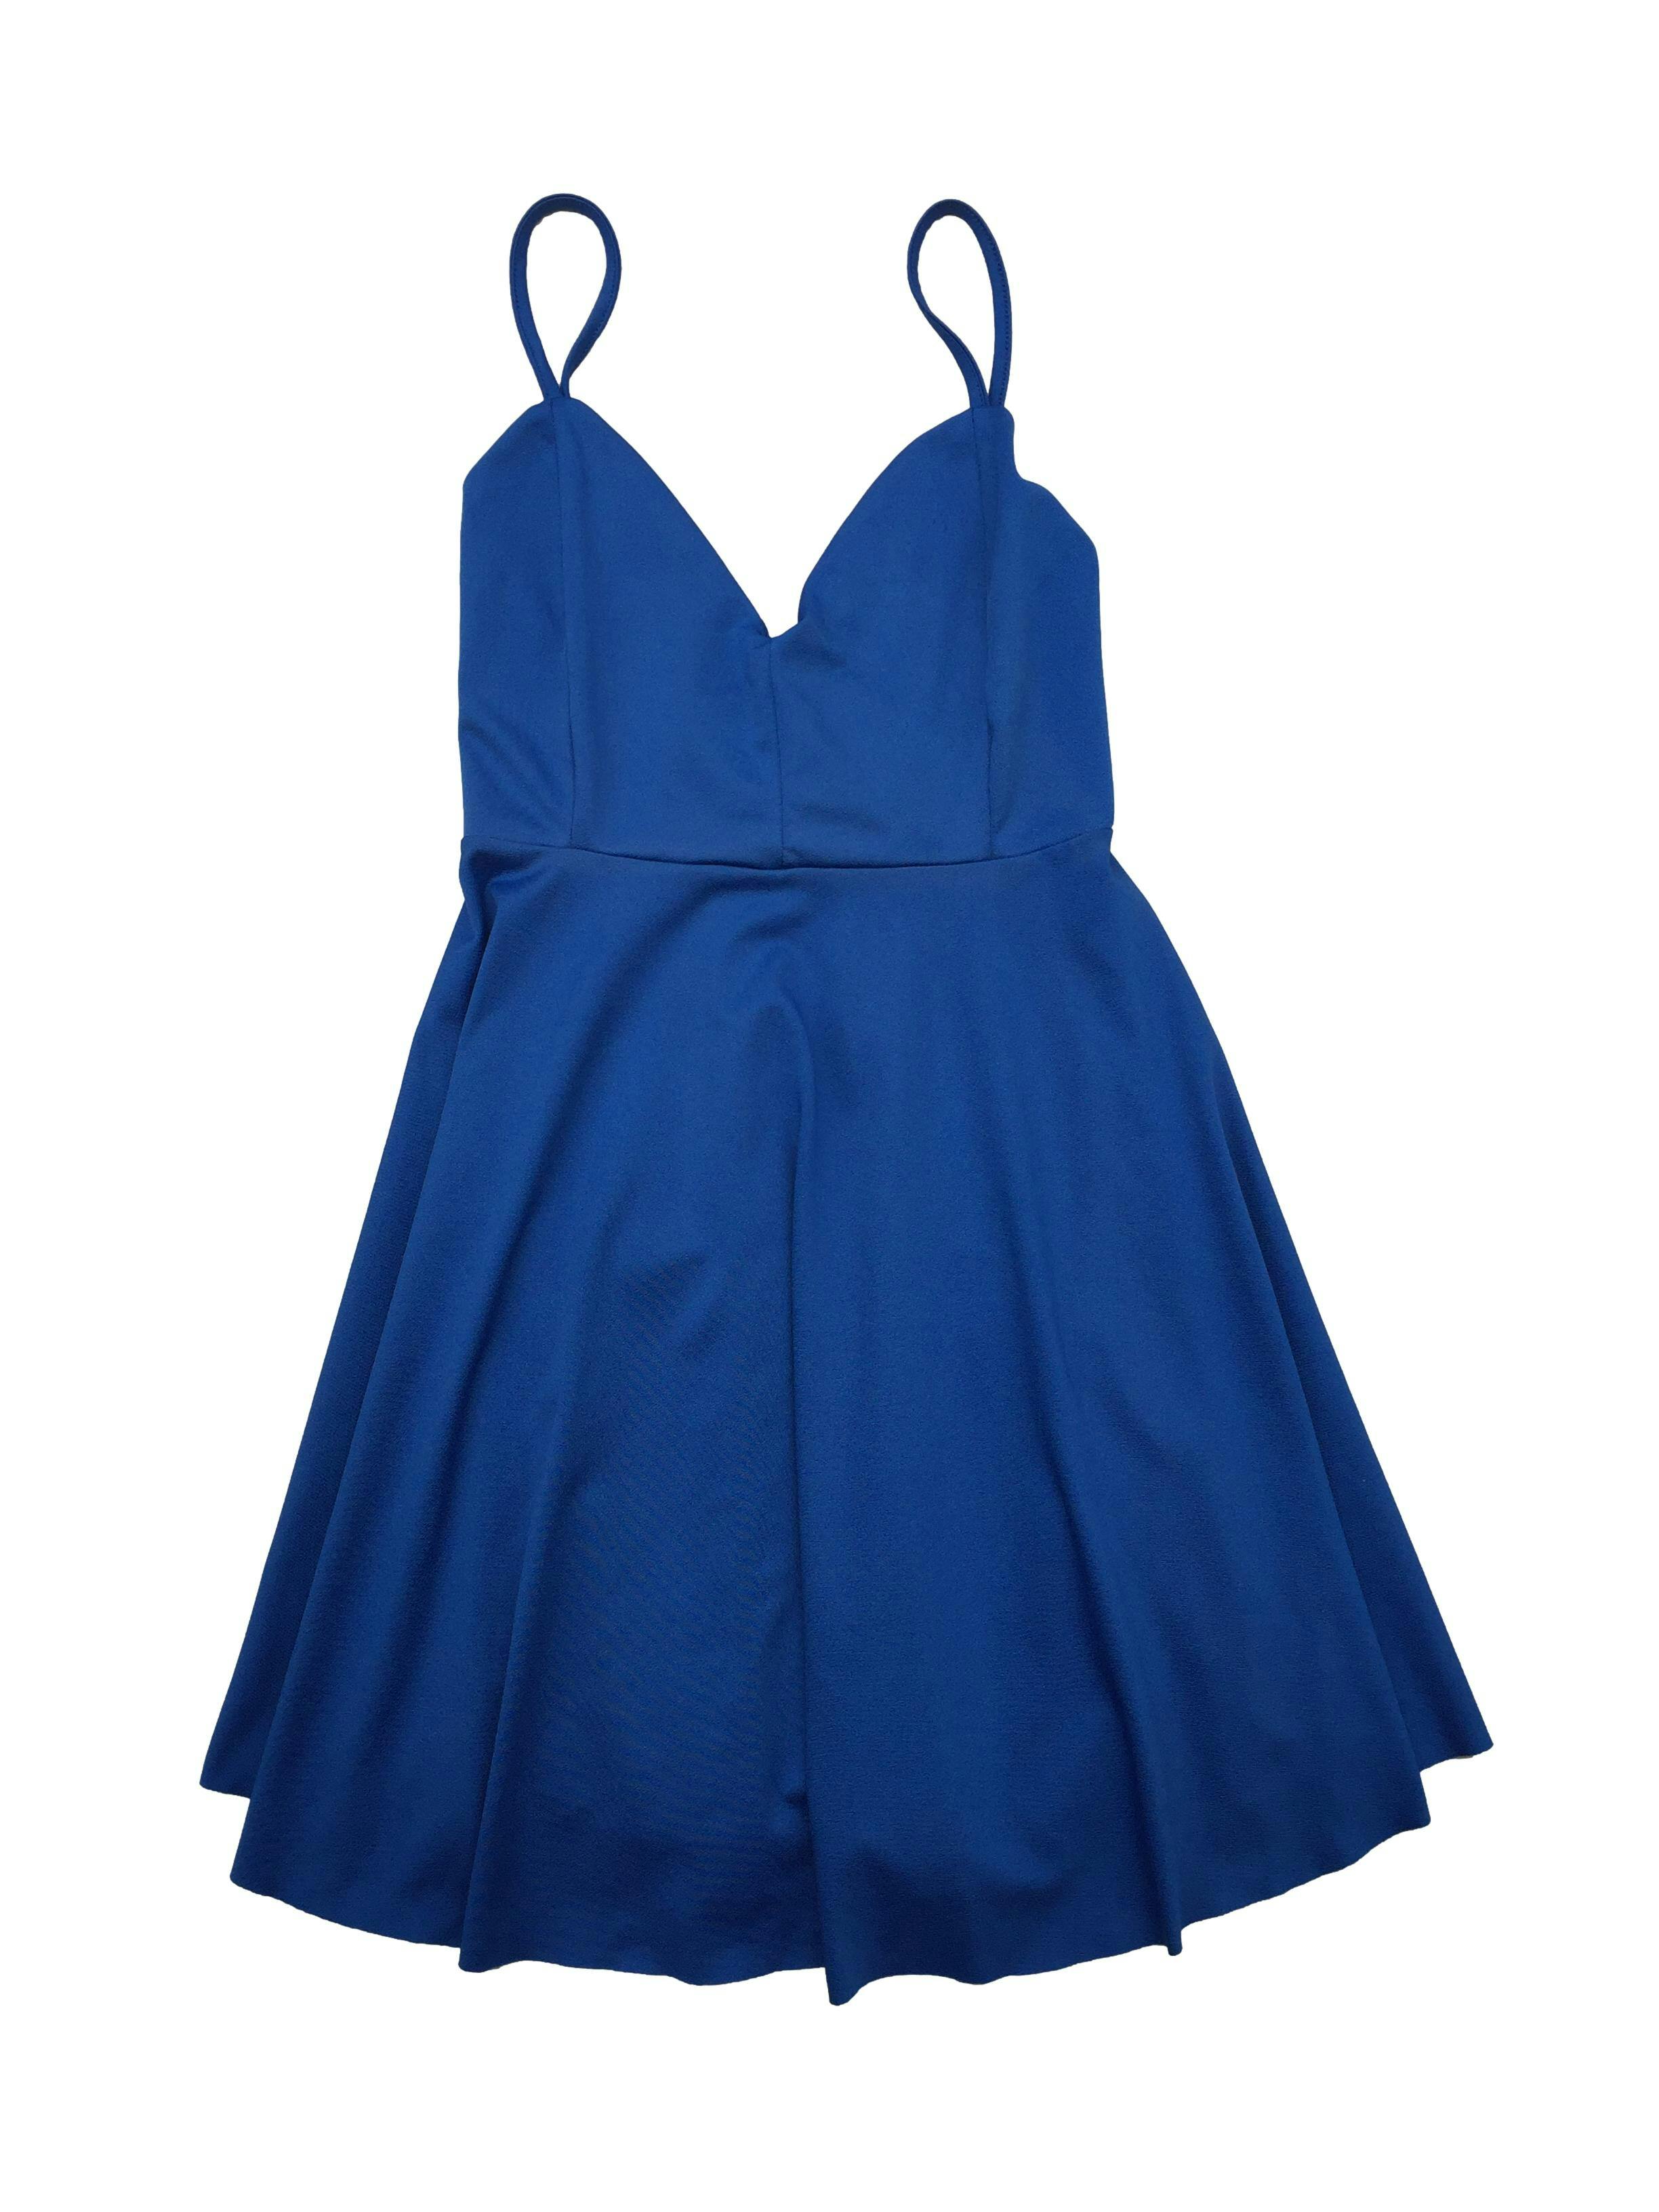 Vestido Index azul de tiras cruzada en espalda, forro de mesh en top y falda con vuelo. Busto: 88cm, Largo: 84cm